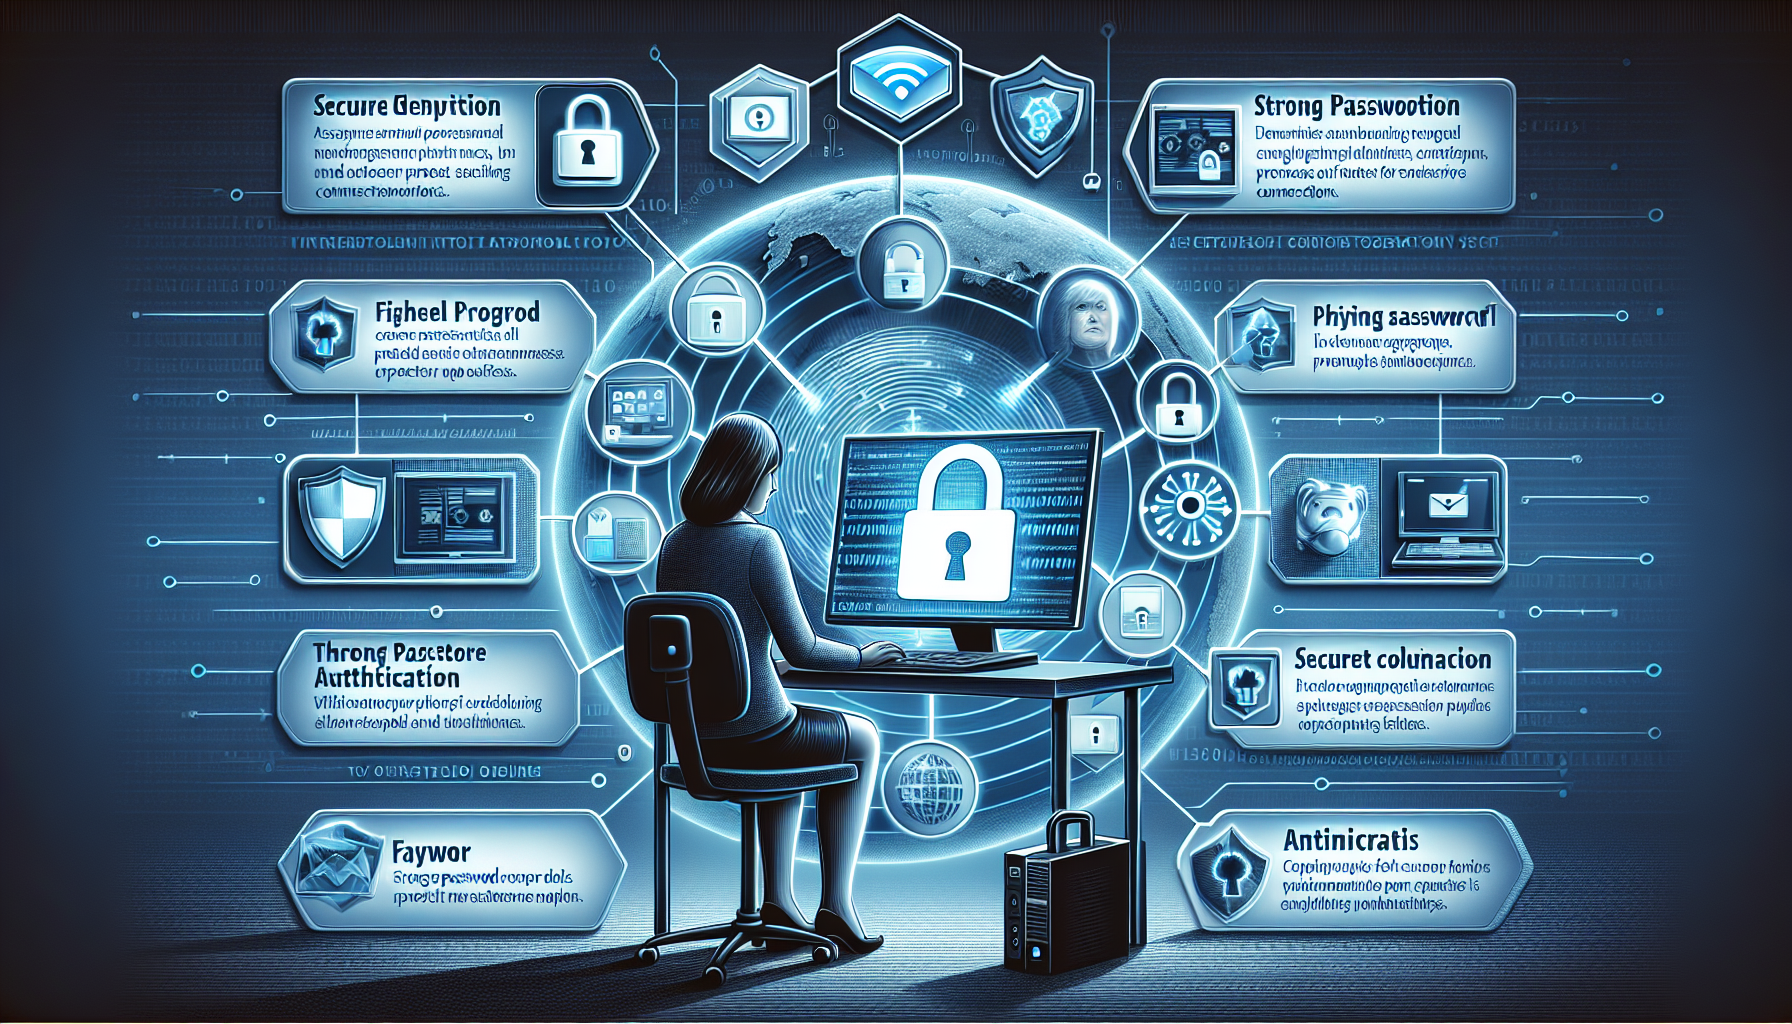 découvrez les bases de la cybersécurité avec cette formation pratique. apprenez à protéger vos données et vos systèmes contre les cybermenaces.